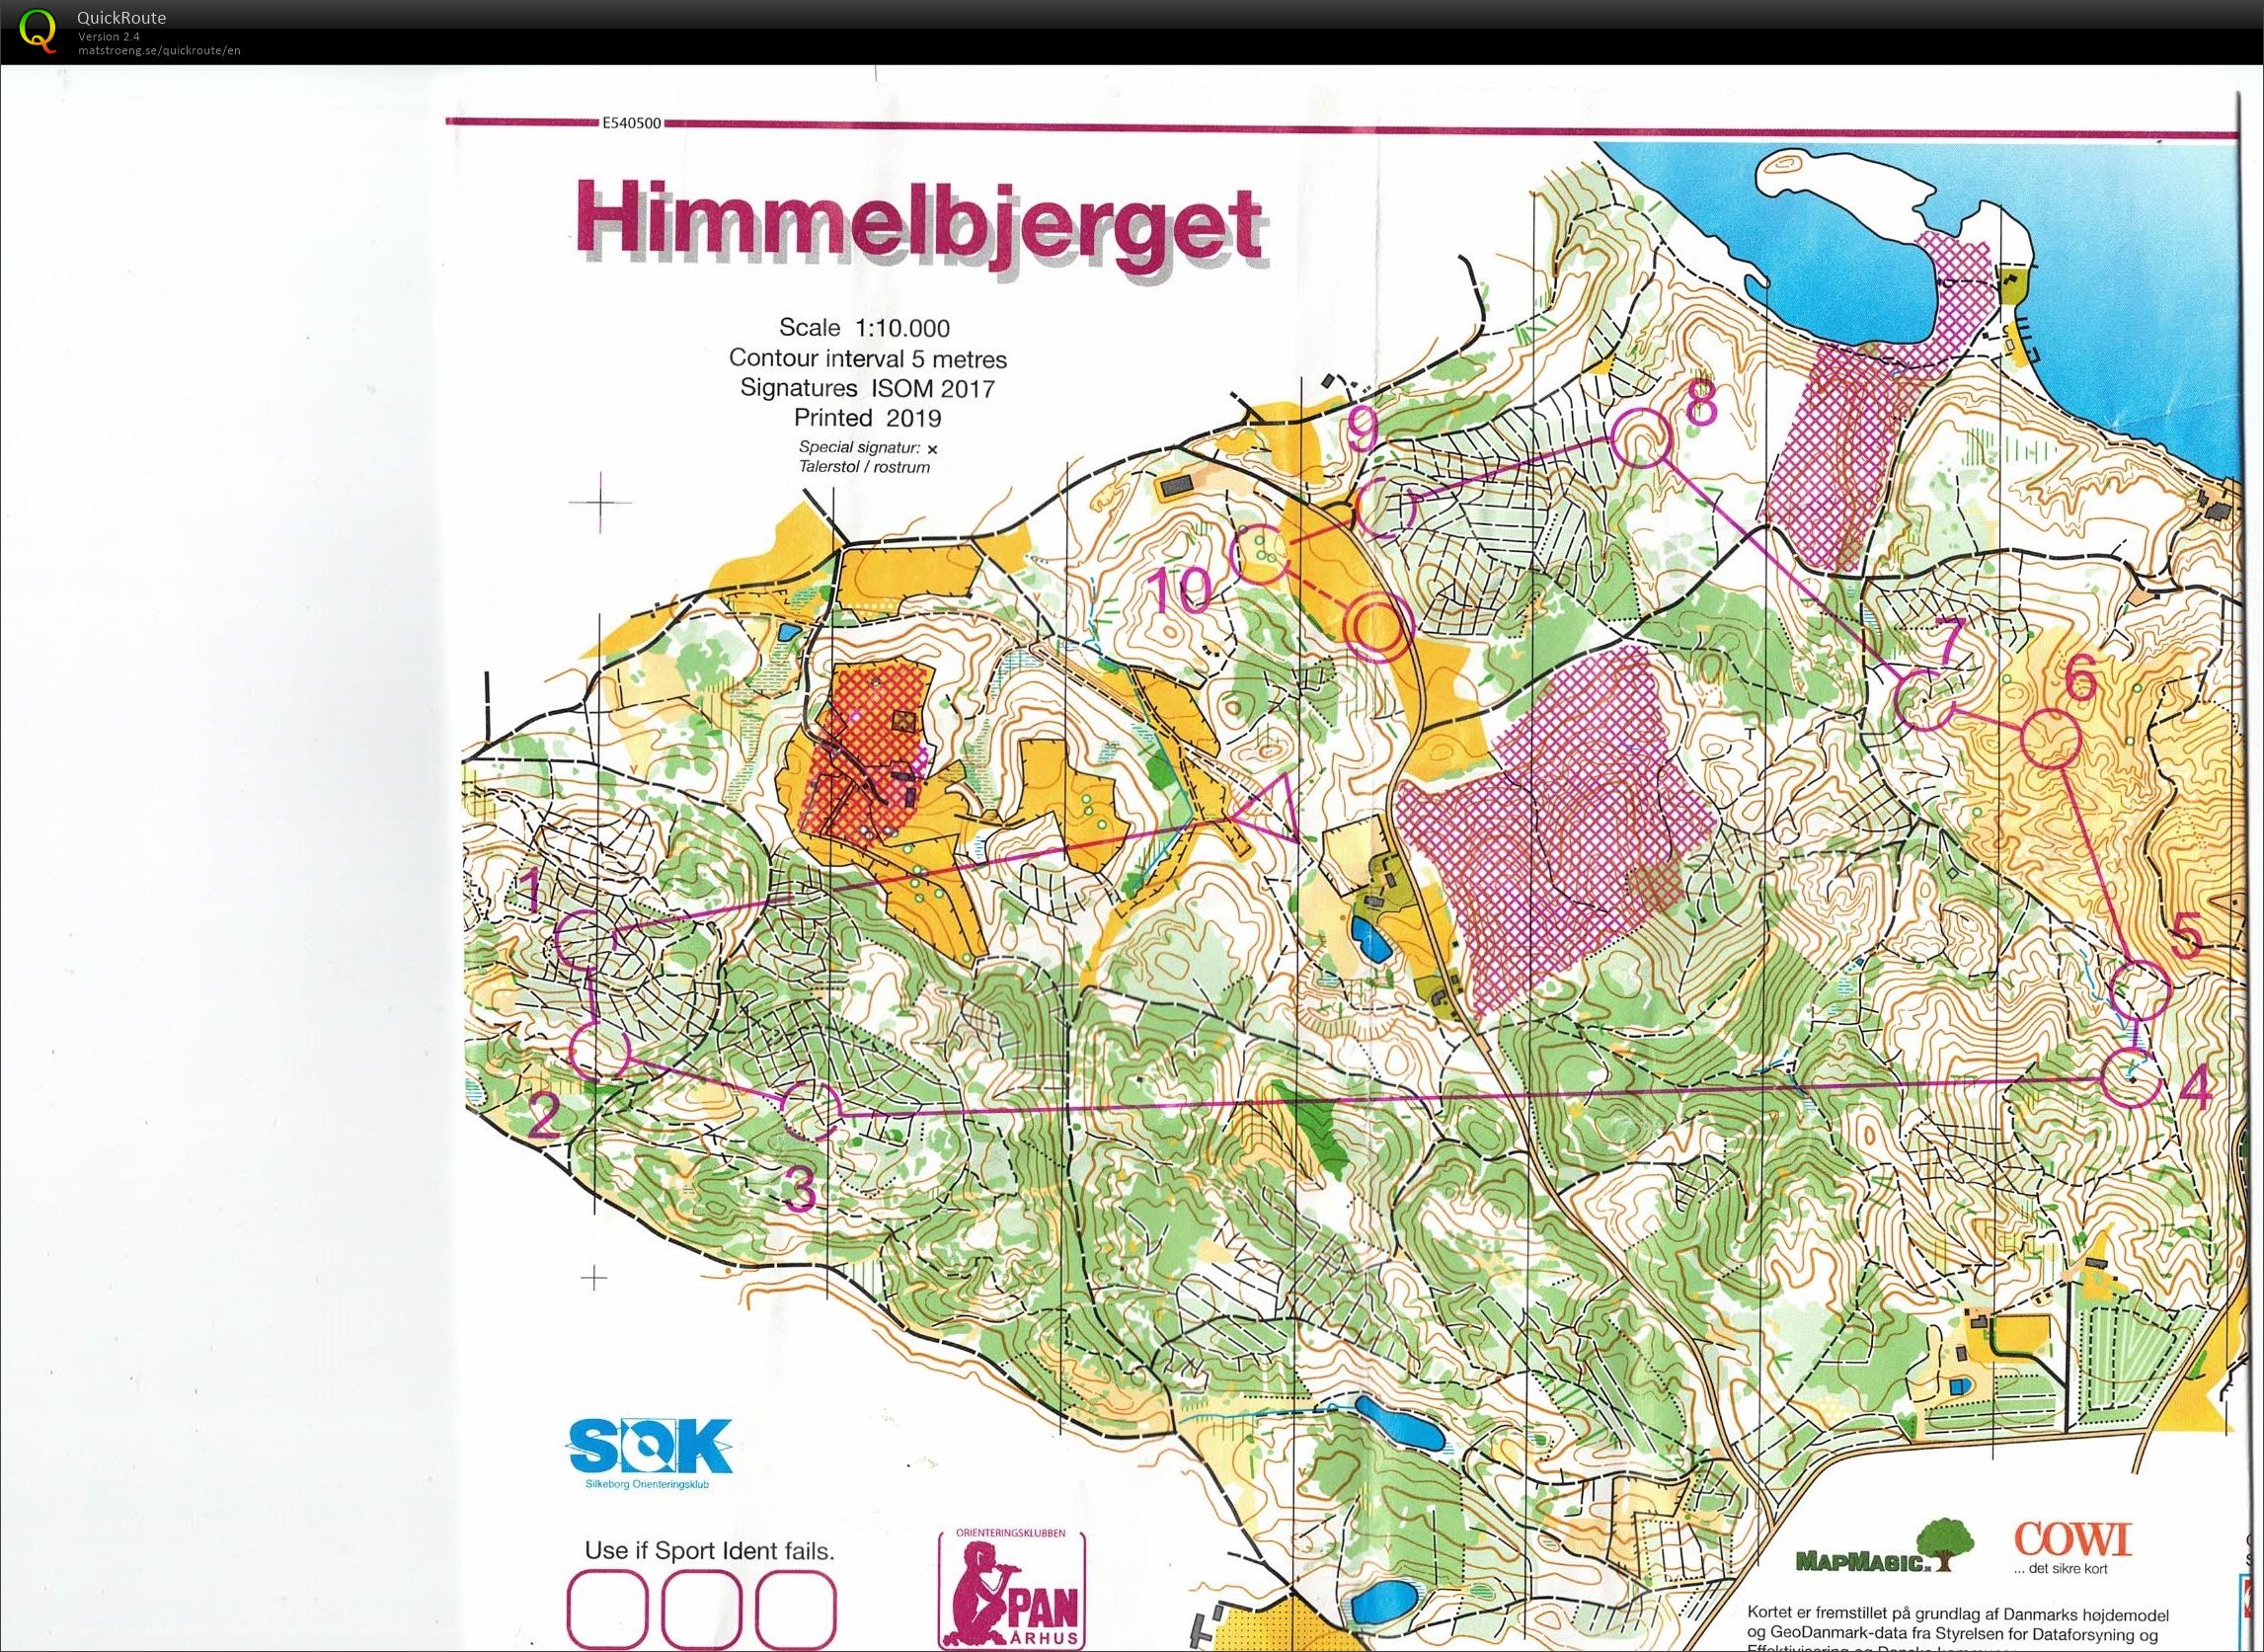 Himmelbjerget, JWOC testløb, Bane Åben 4, Pia Gade, 090619 (09-06-2019)